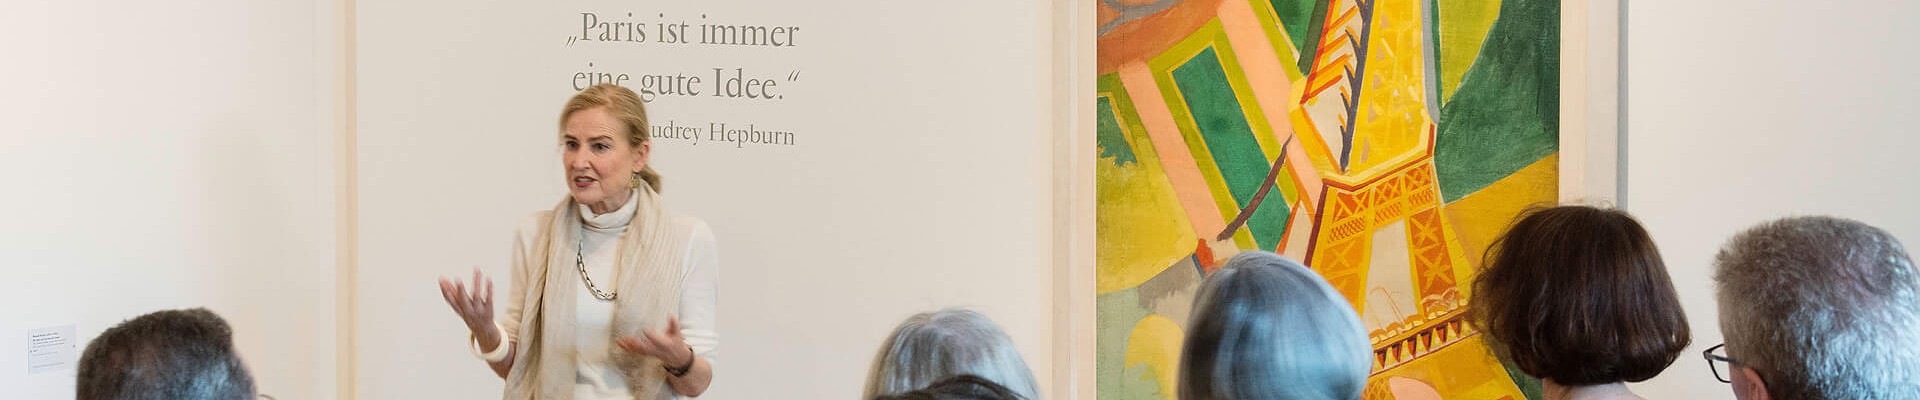 Höhepunkt im Ausstellungsreigen 2019: Kunst aus Paris
zu Gast in der Kunsthalle Würth, wie hier Robert Delaunays „Eiffelturm“.
Rund 200 Meisterwerke „Von Henri Matisse bis Louise Bourgeois“
begeisterten über 142.000 Kunstinteressierte.
